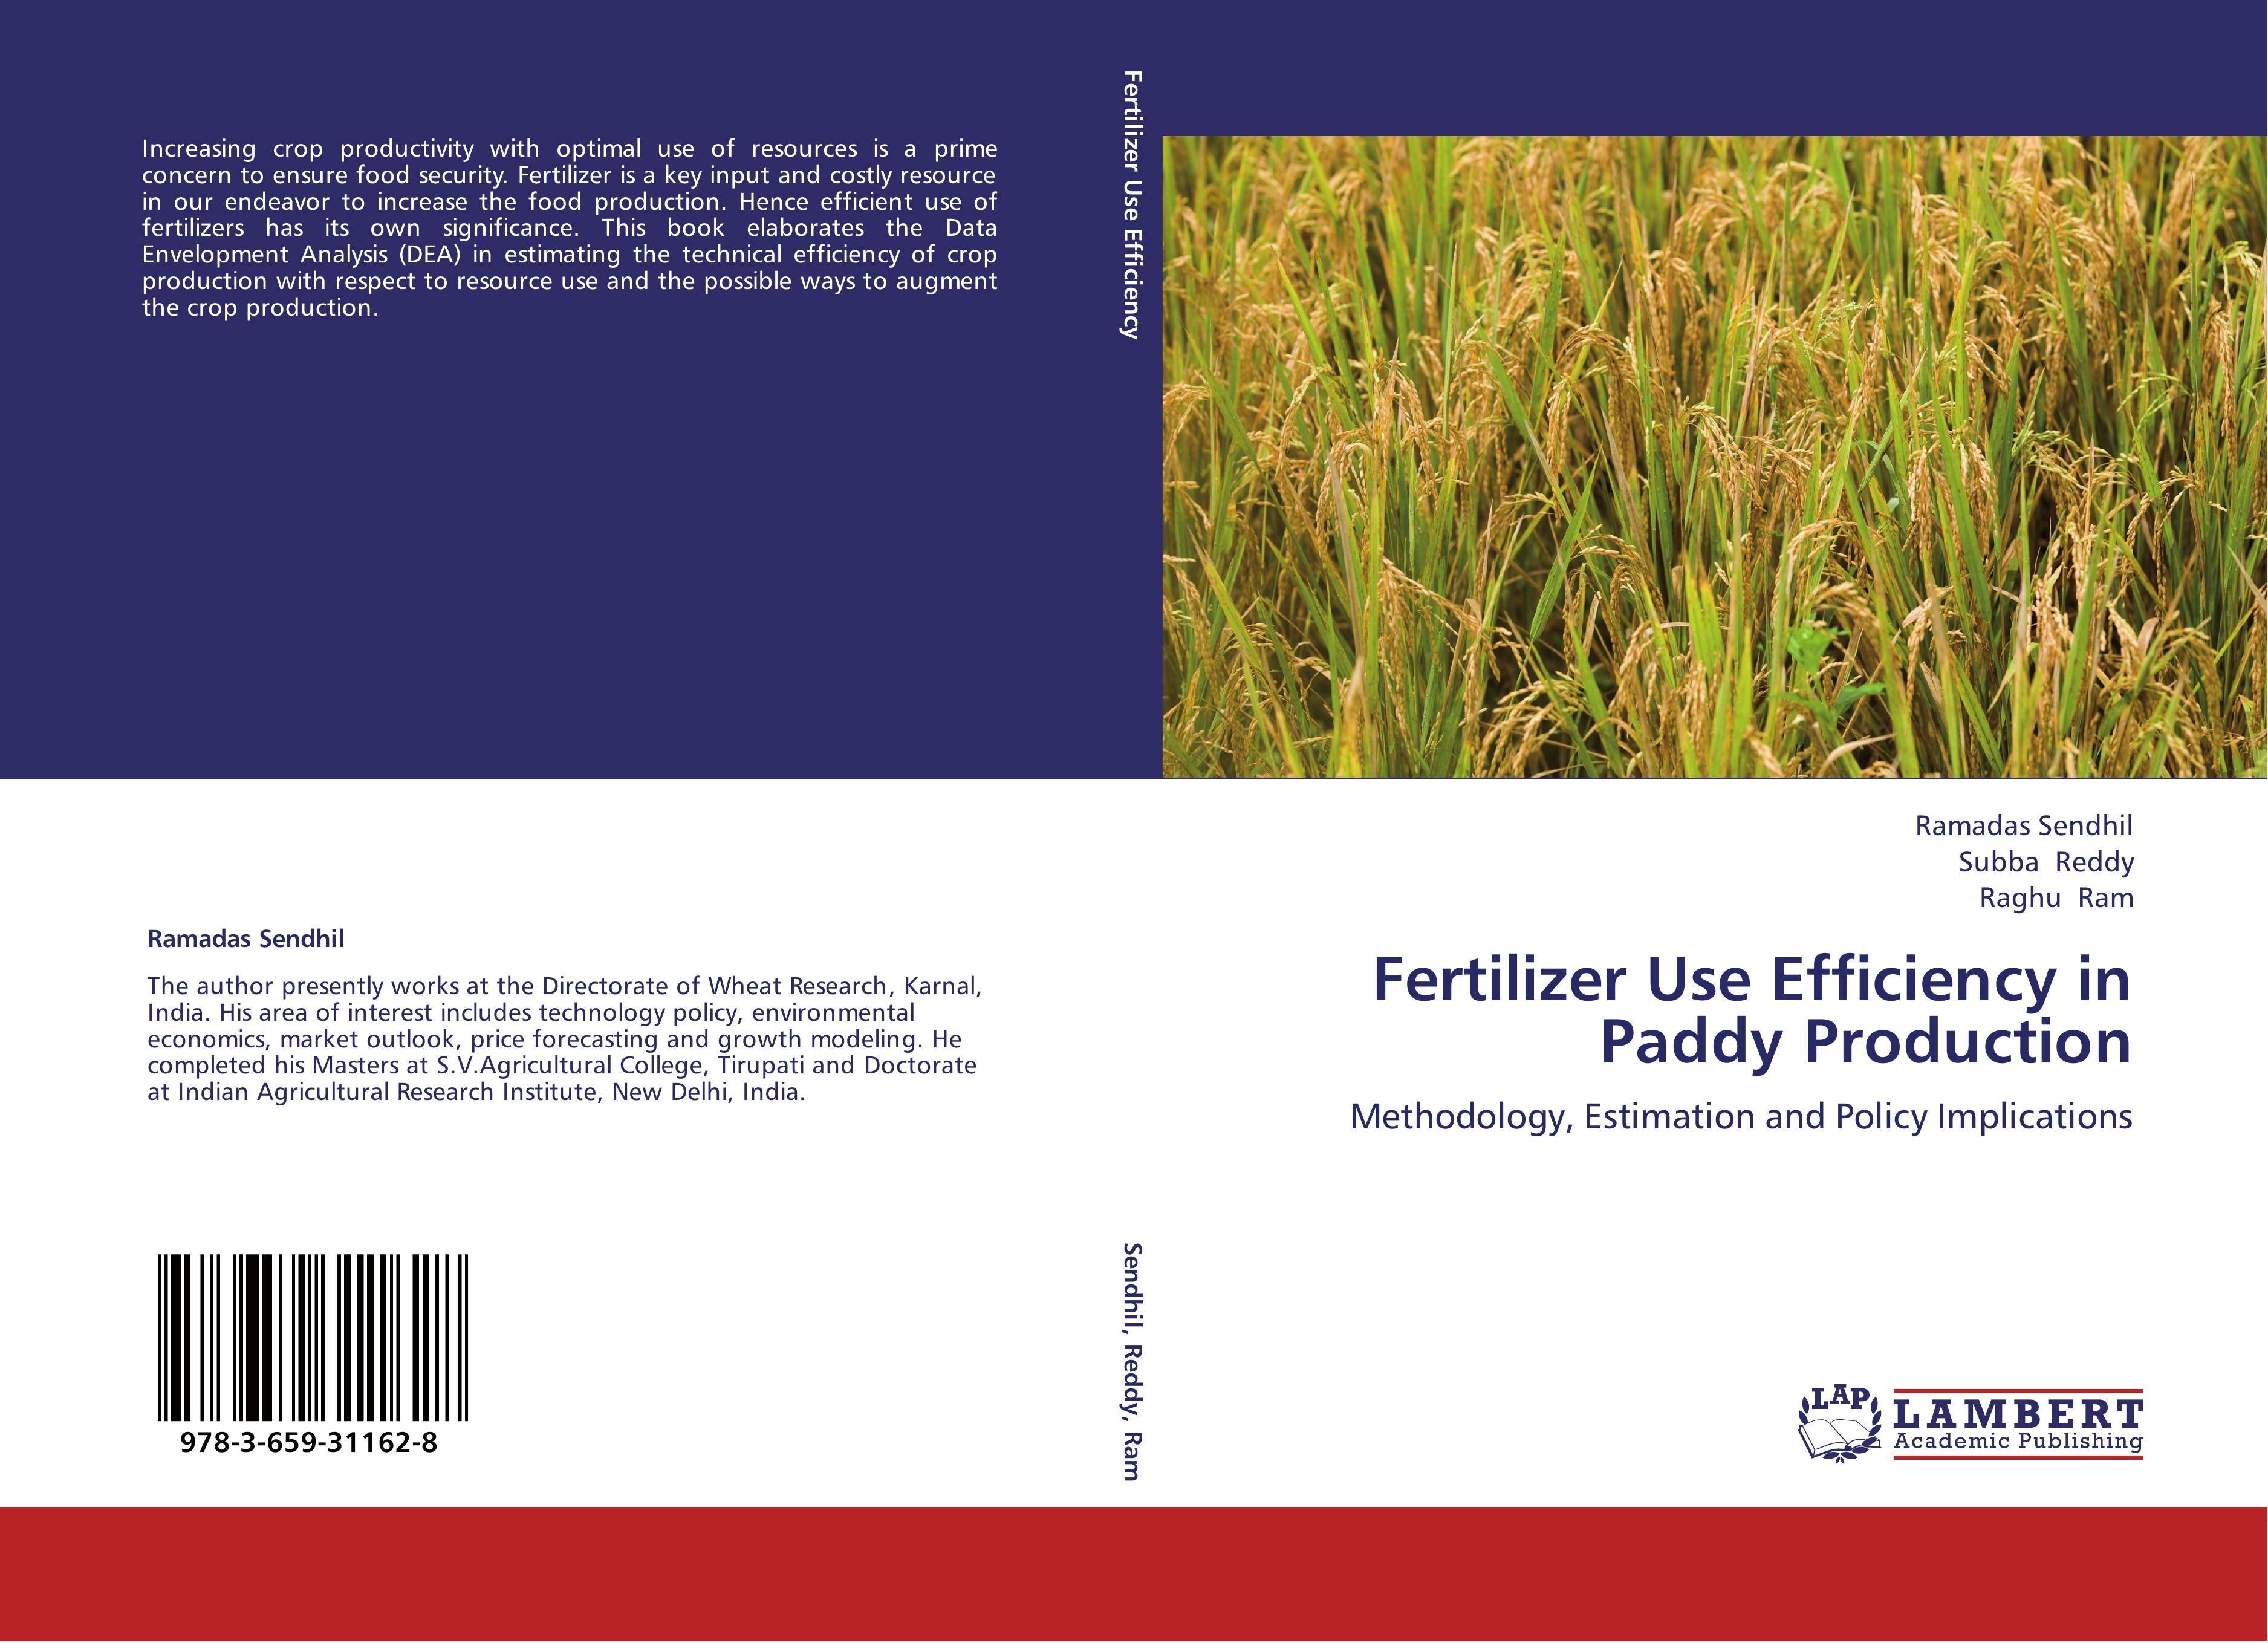 Fertilizer Use Efficiency in Paddy Production - Ramadas Sendhil Subba Reddy Raghu Ram